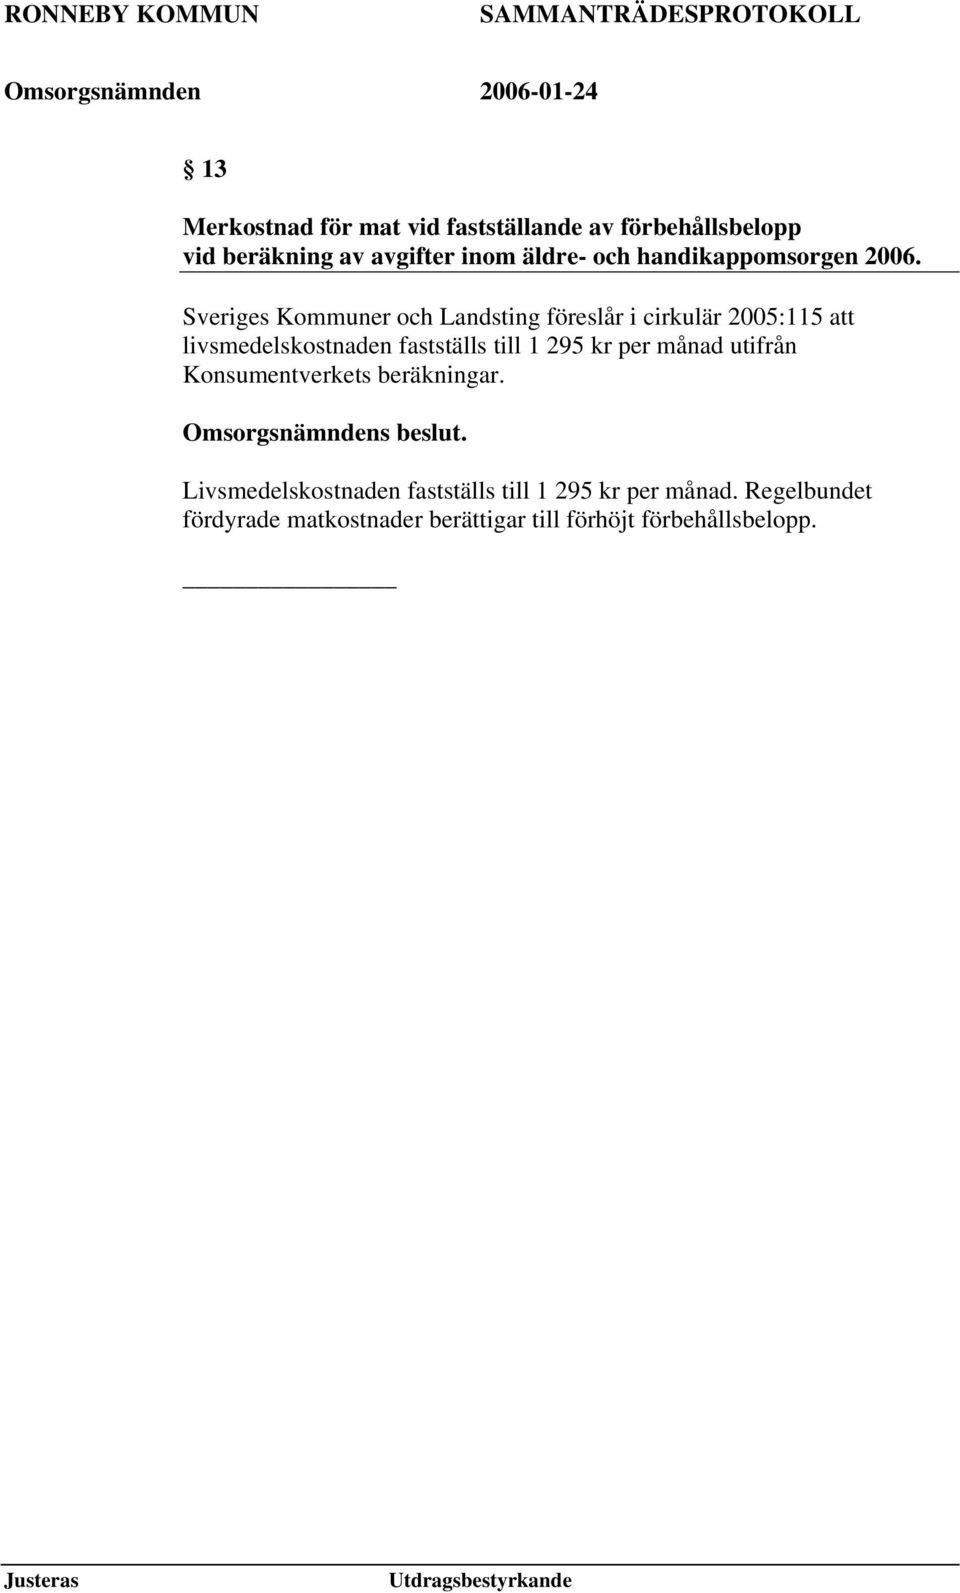 Sveriges Kommuner och Landsting föreslår i cirkulär 2005:115 att livsmedelskostnaden fastställs till 1